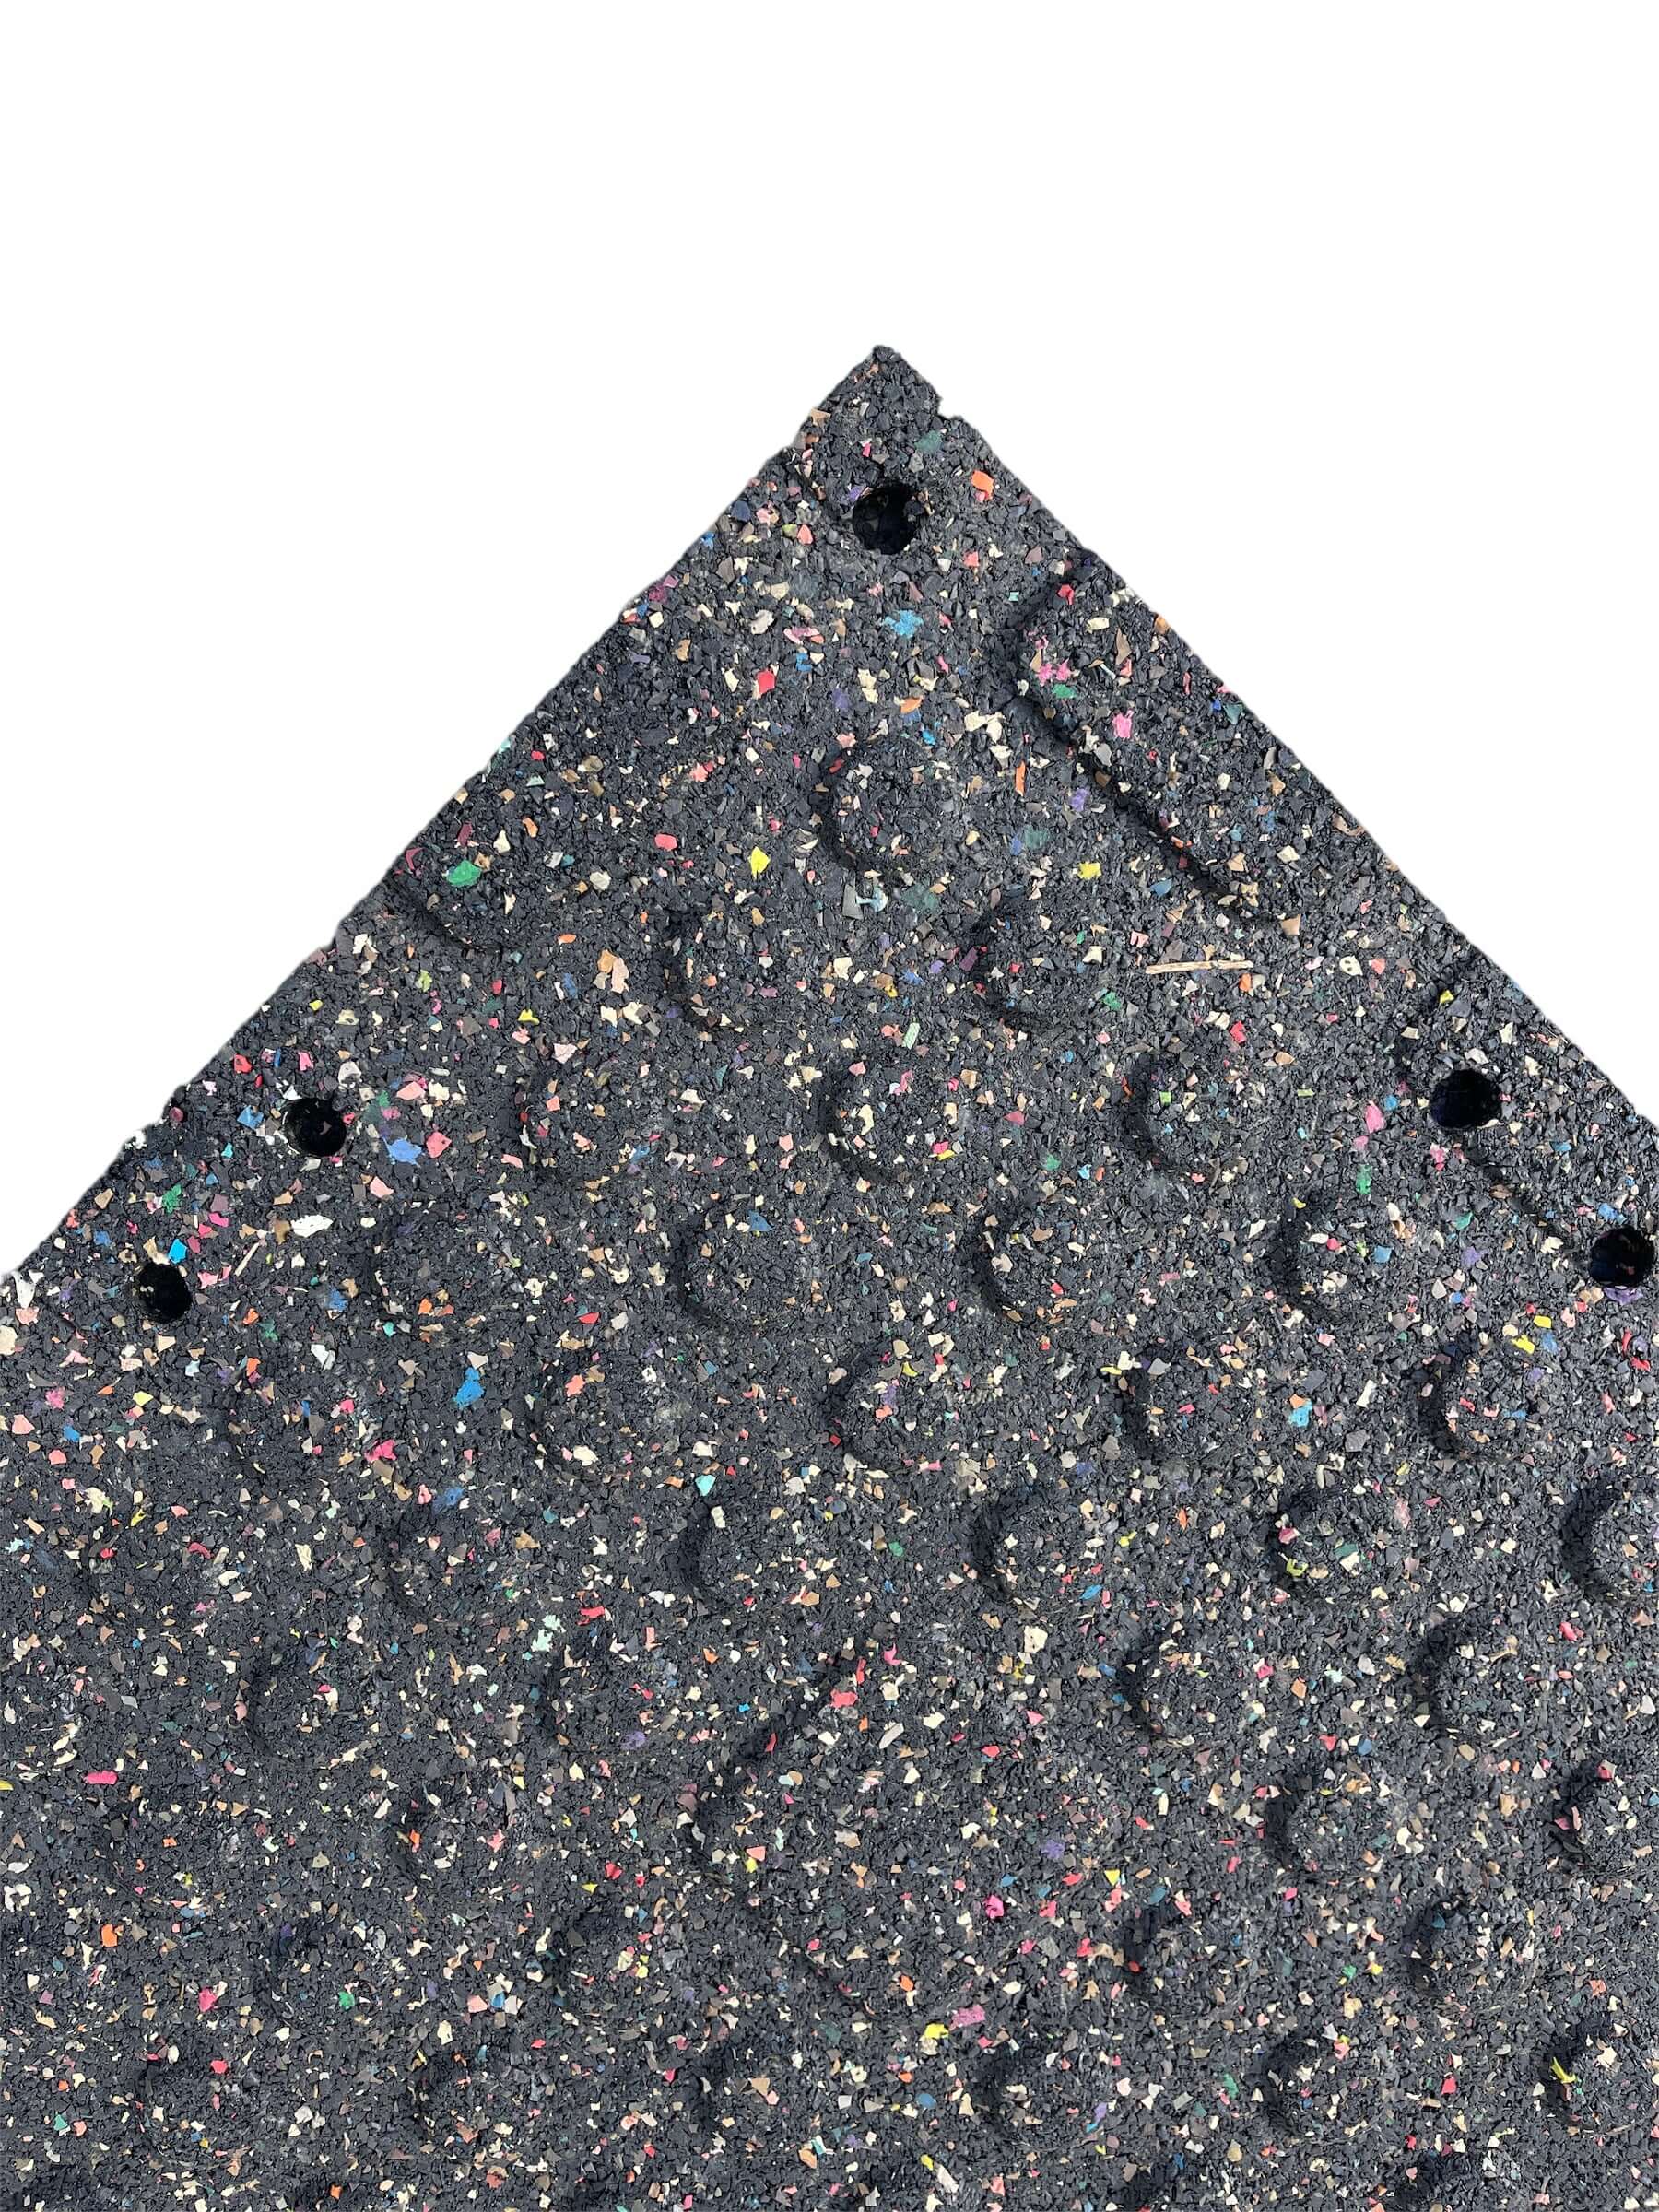 Single 30mm Rubber Gym Flooring Dual Density EPDM Rubber Dense Tile Mat 1m x 1m BLACK | INSOURCE